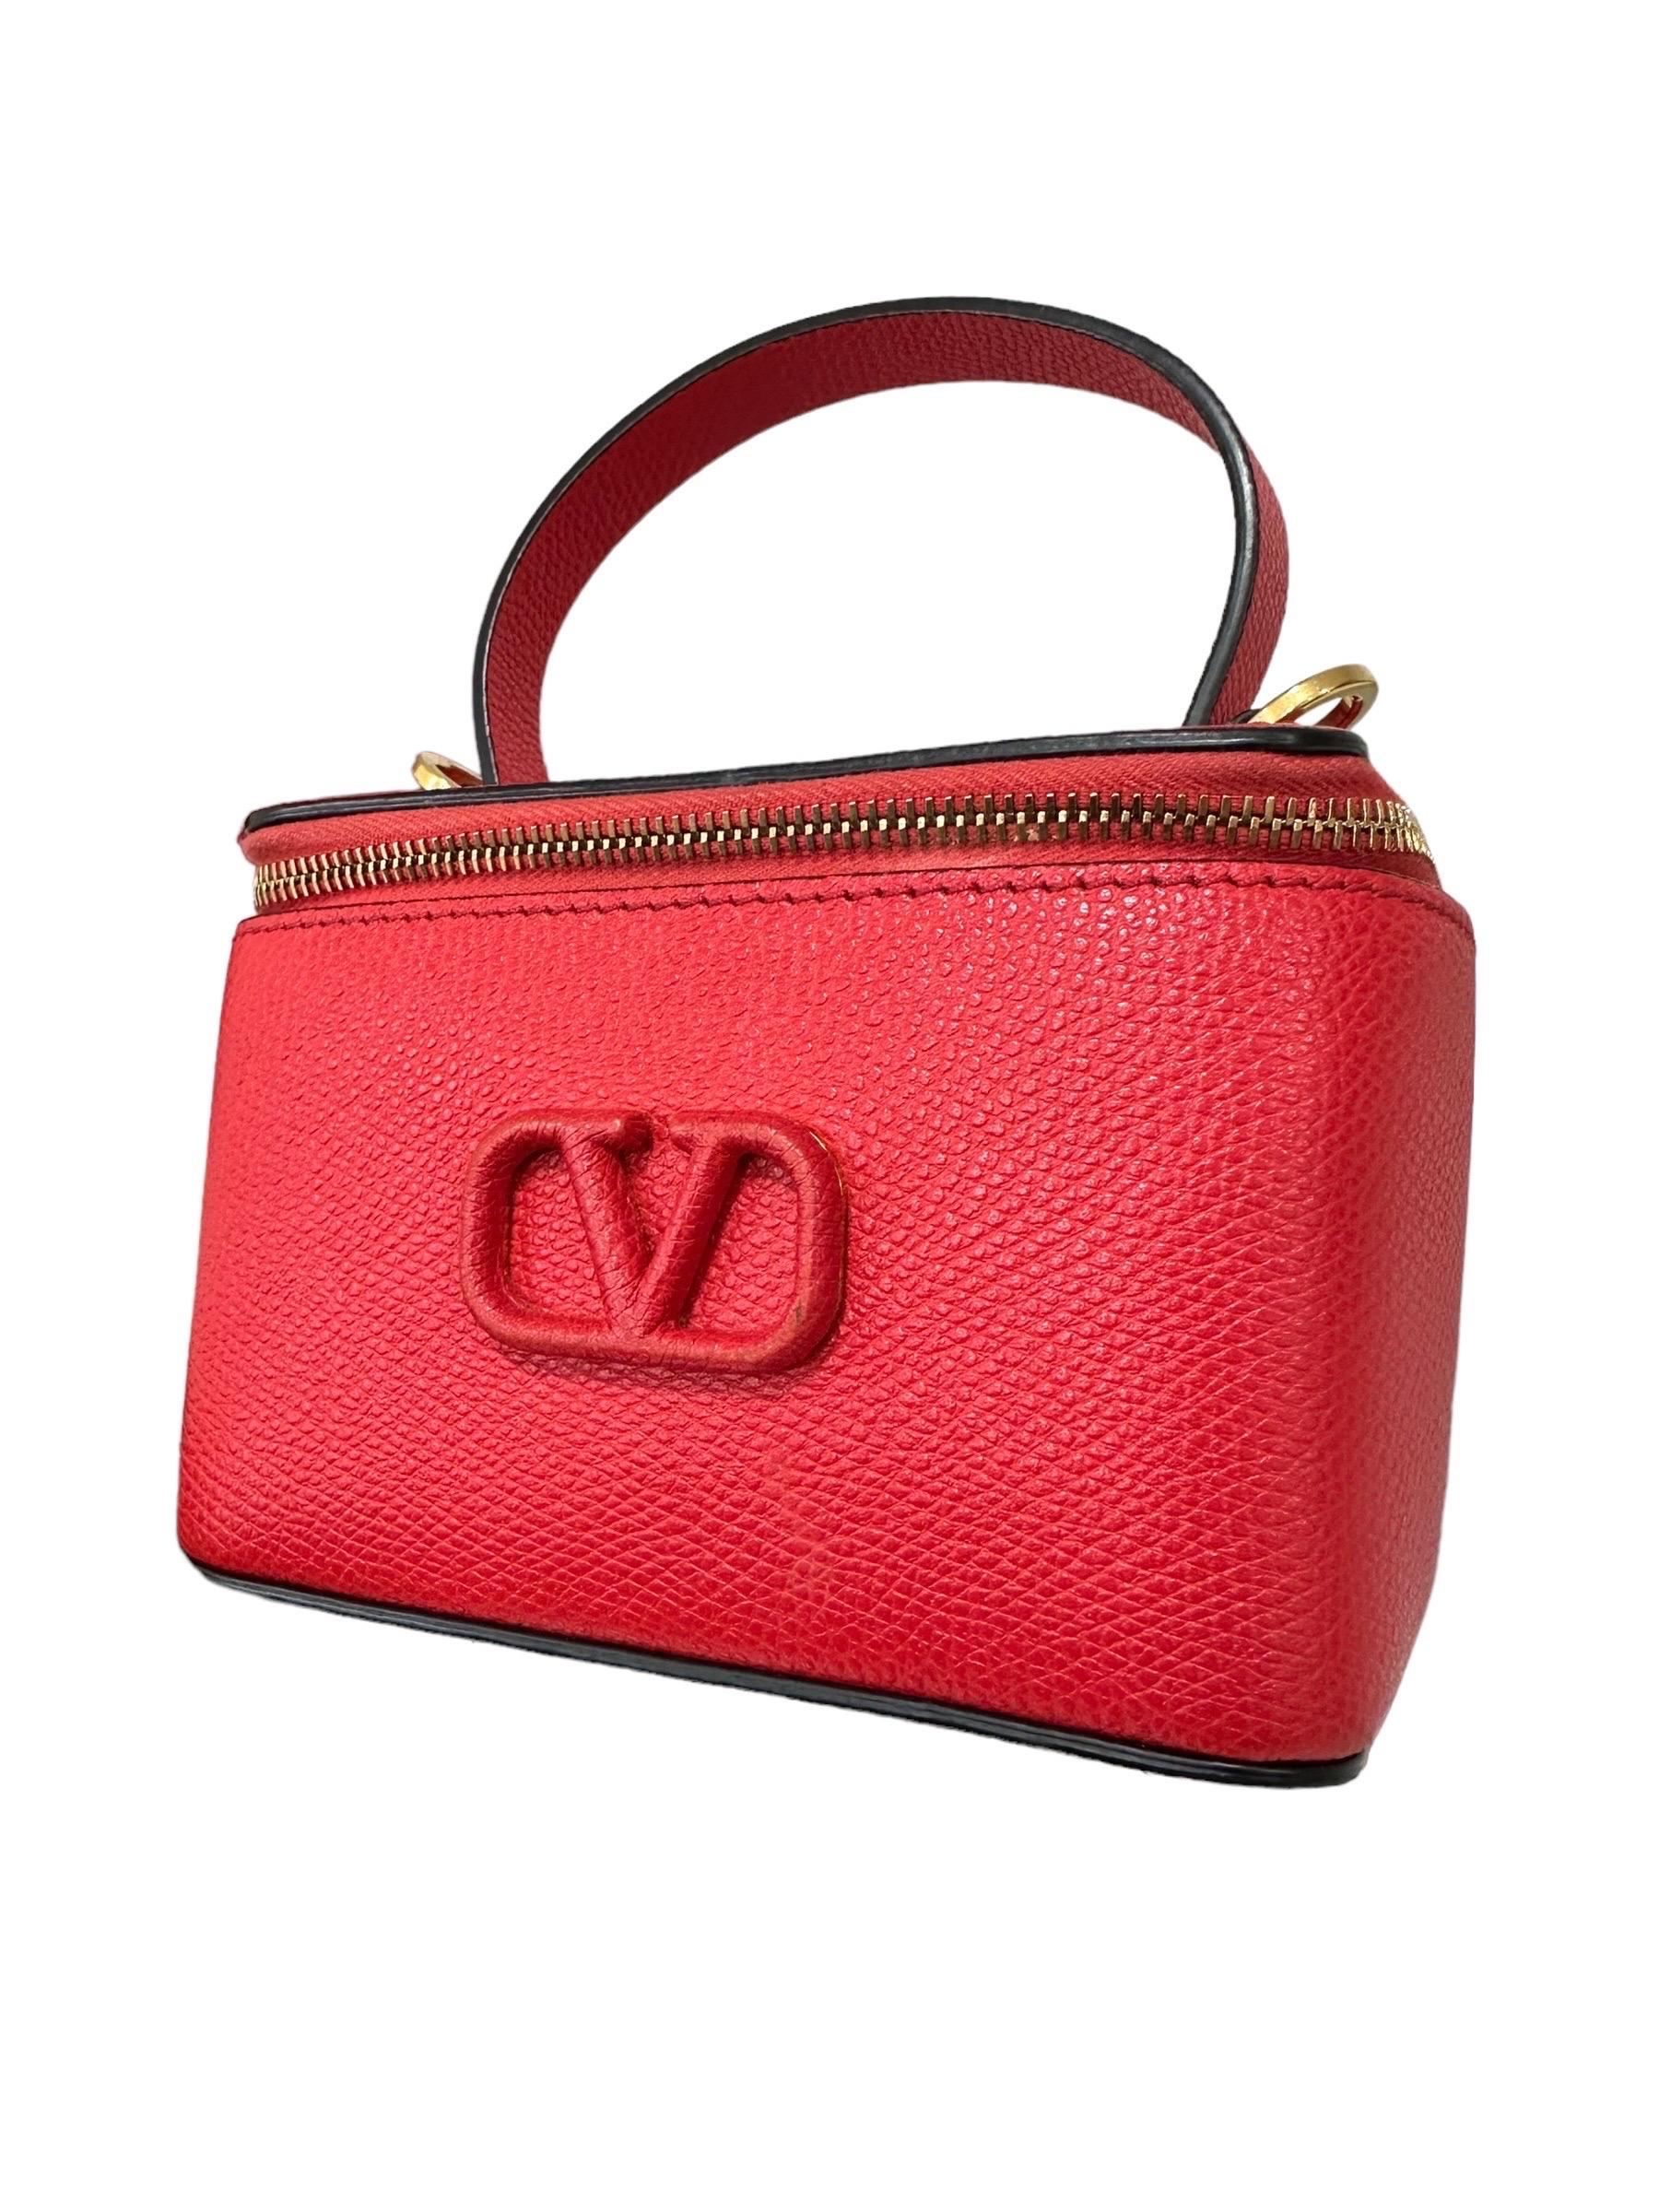 Valentino VLogo Micro Beauty Rosso Borsa a Tracolla For Sale 7